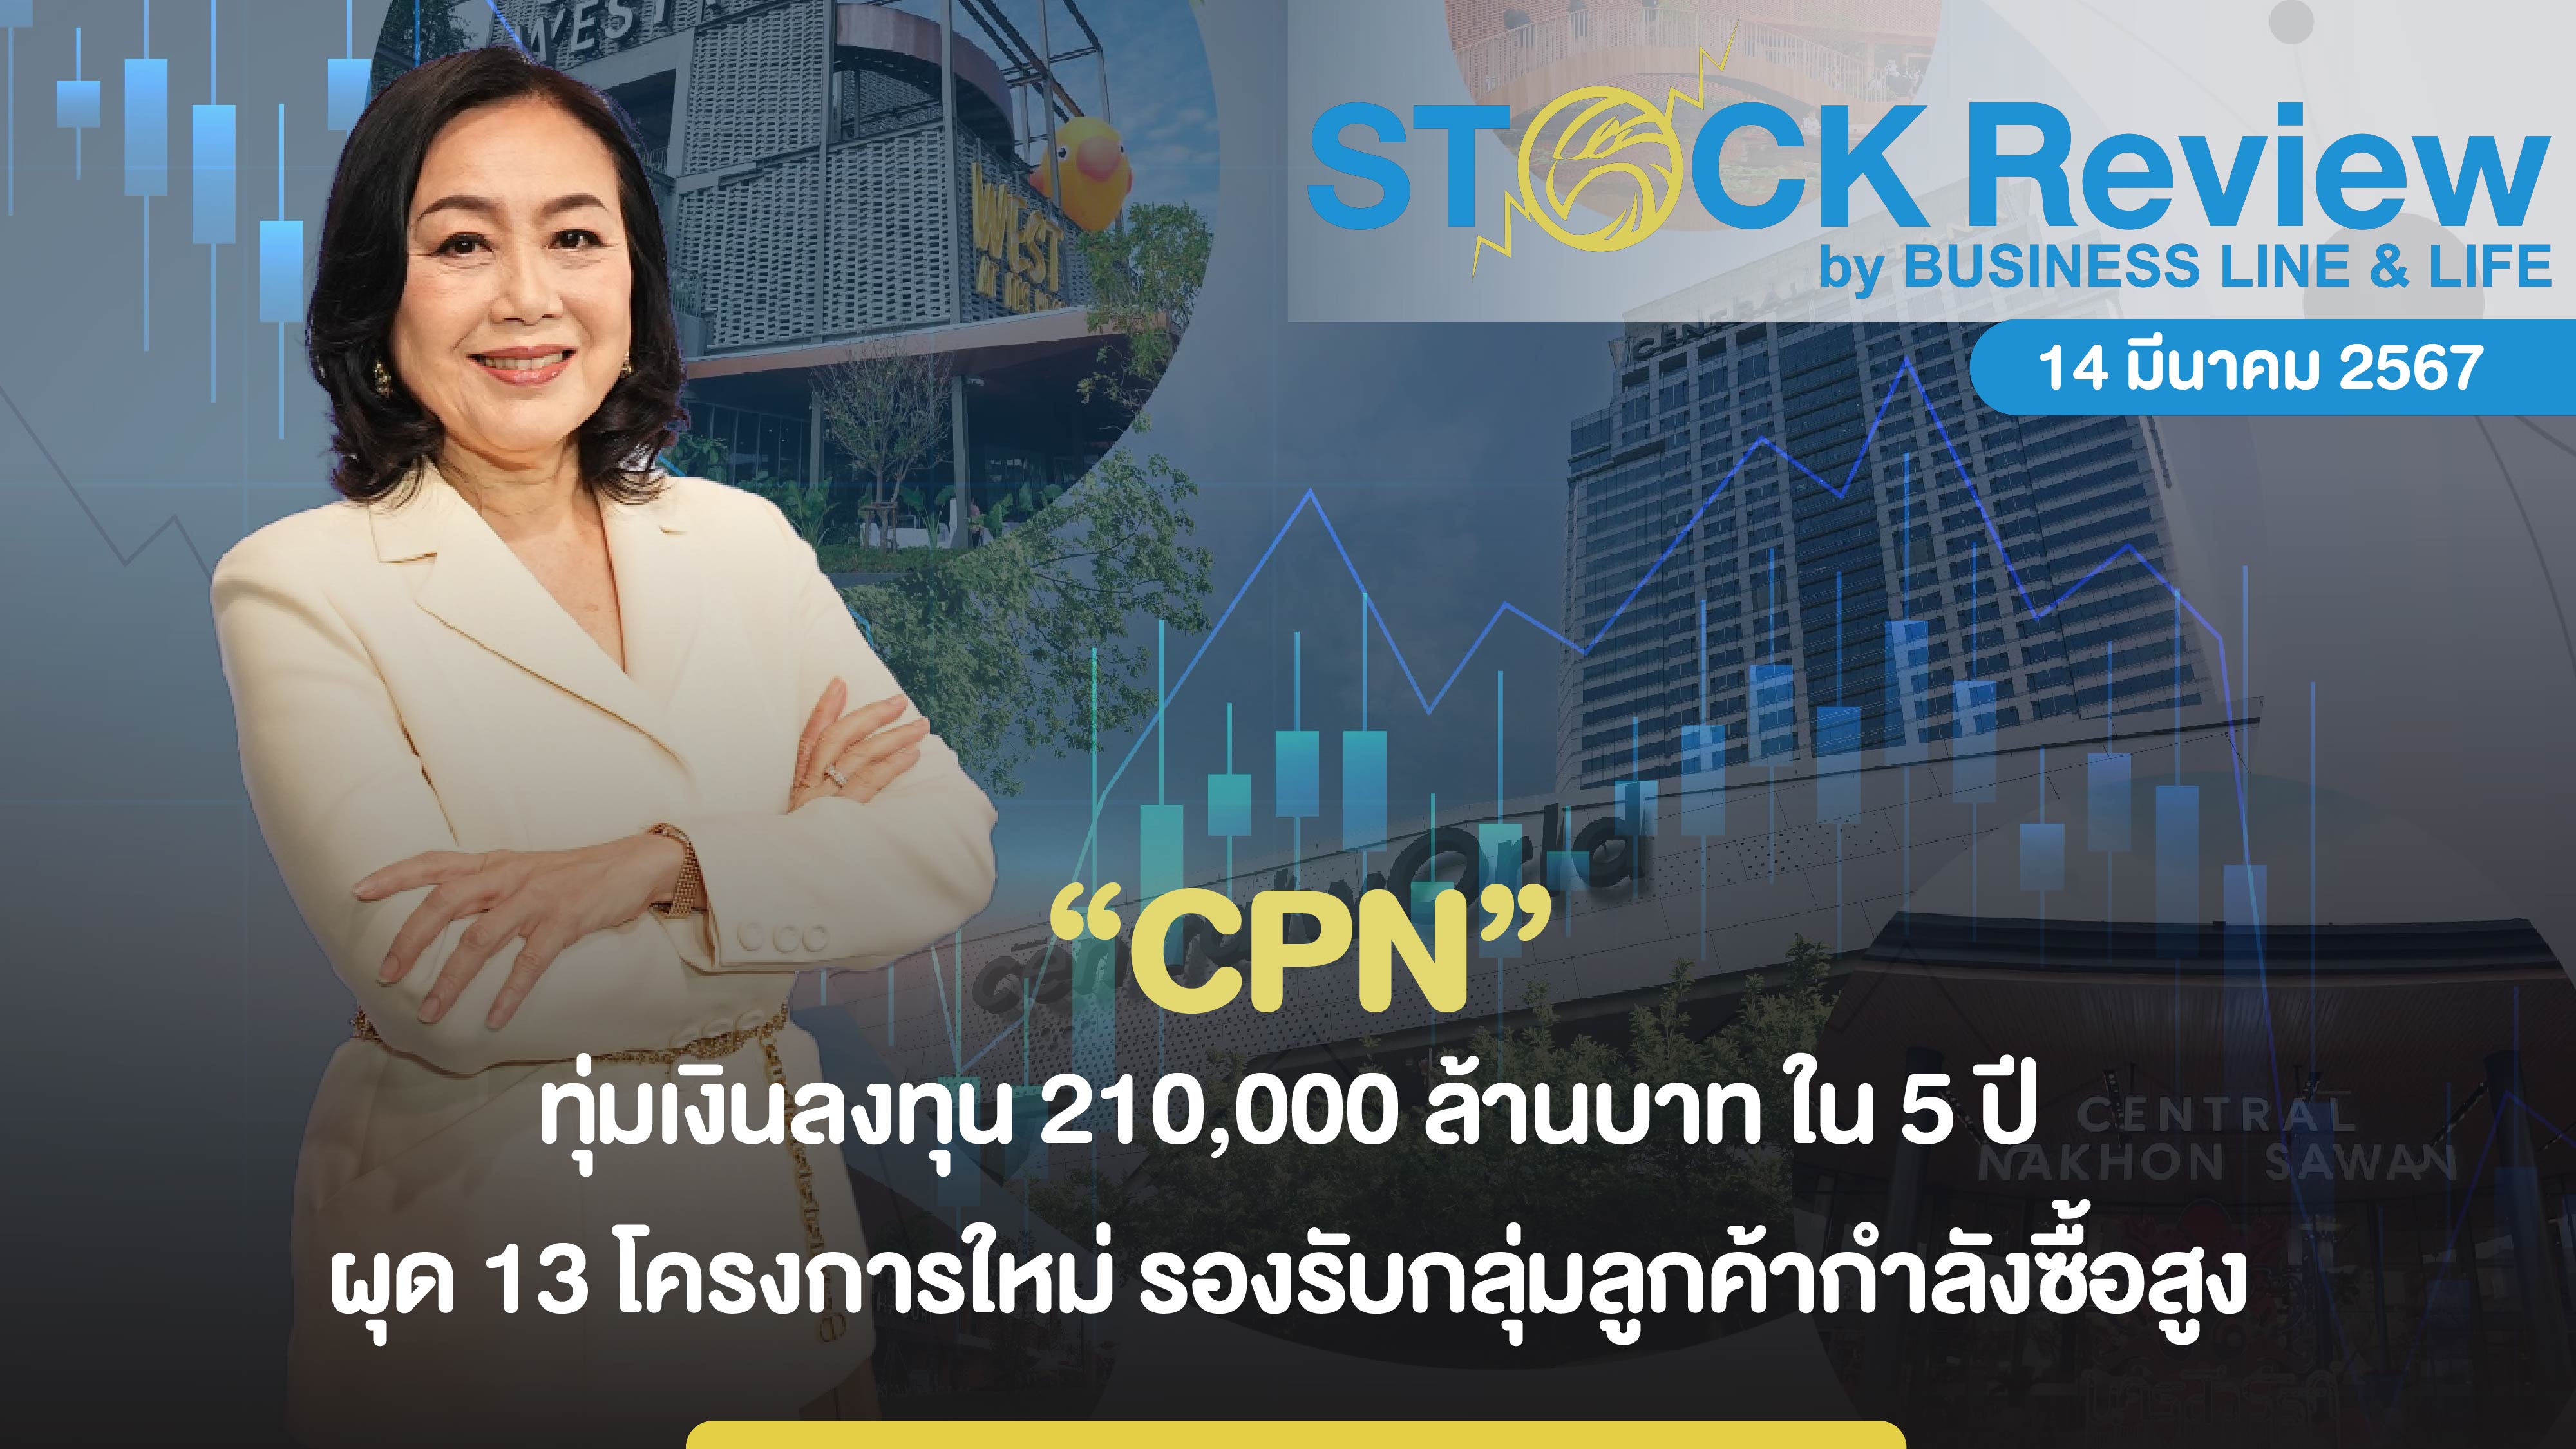 CPN ทุ่มเงินลงทุน 210,000 ล้านบาท ใน 5 ปี